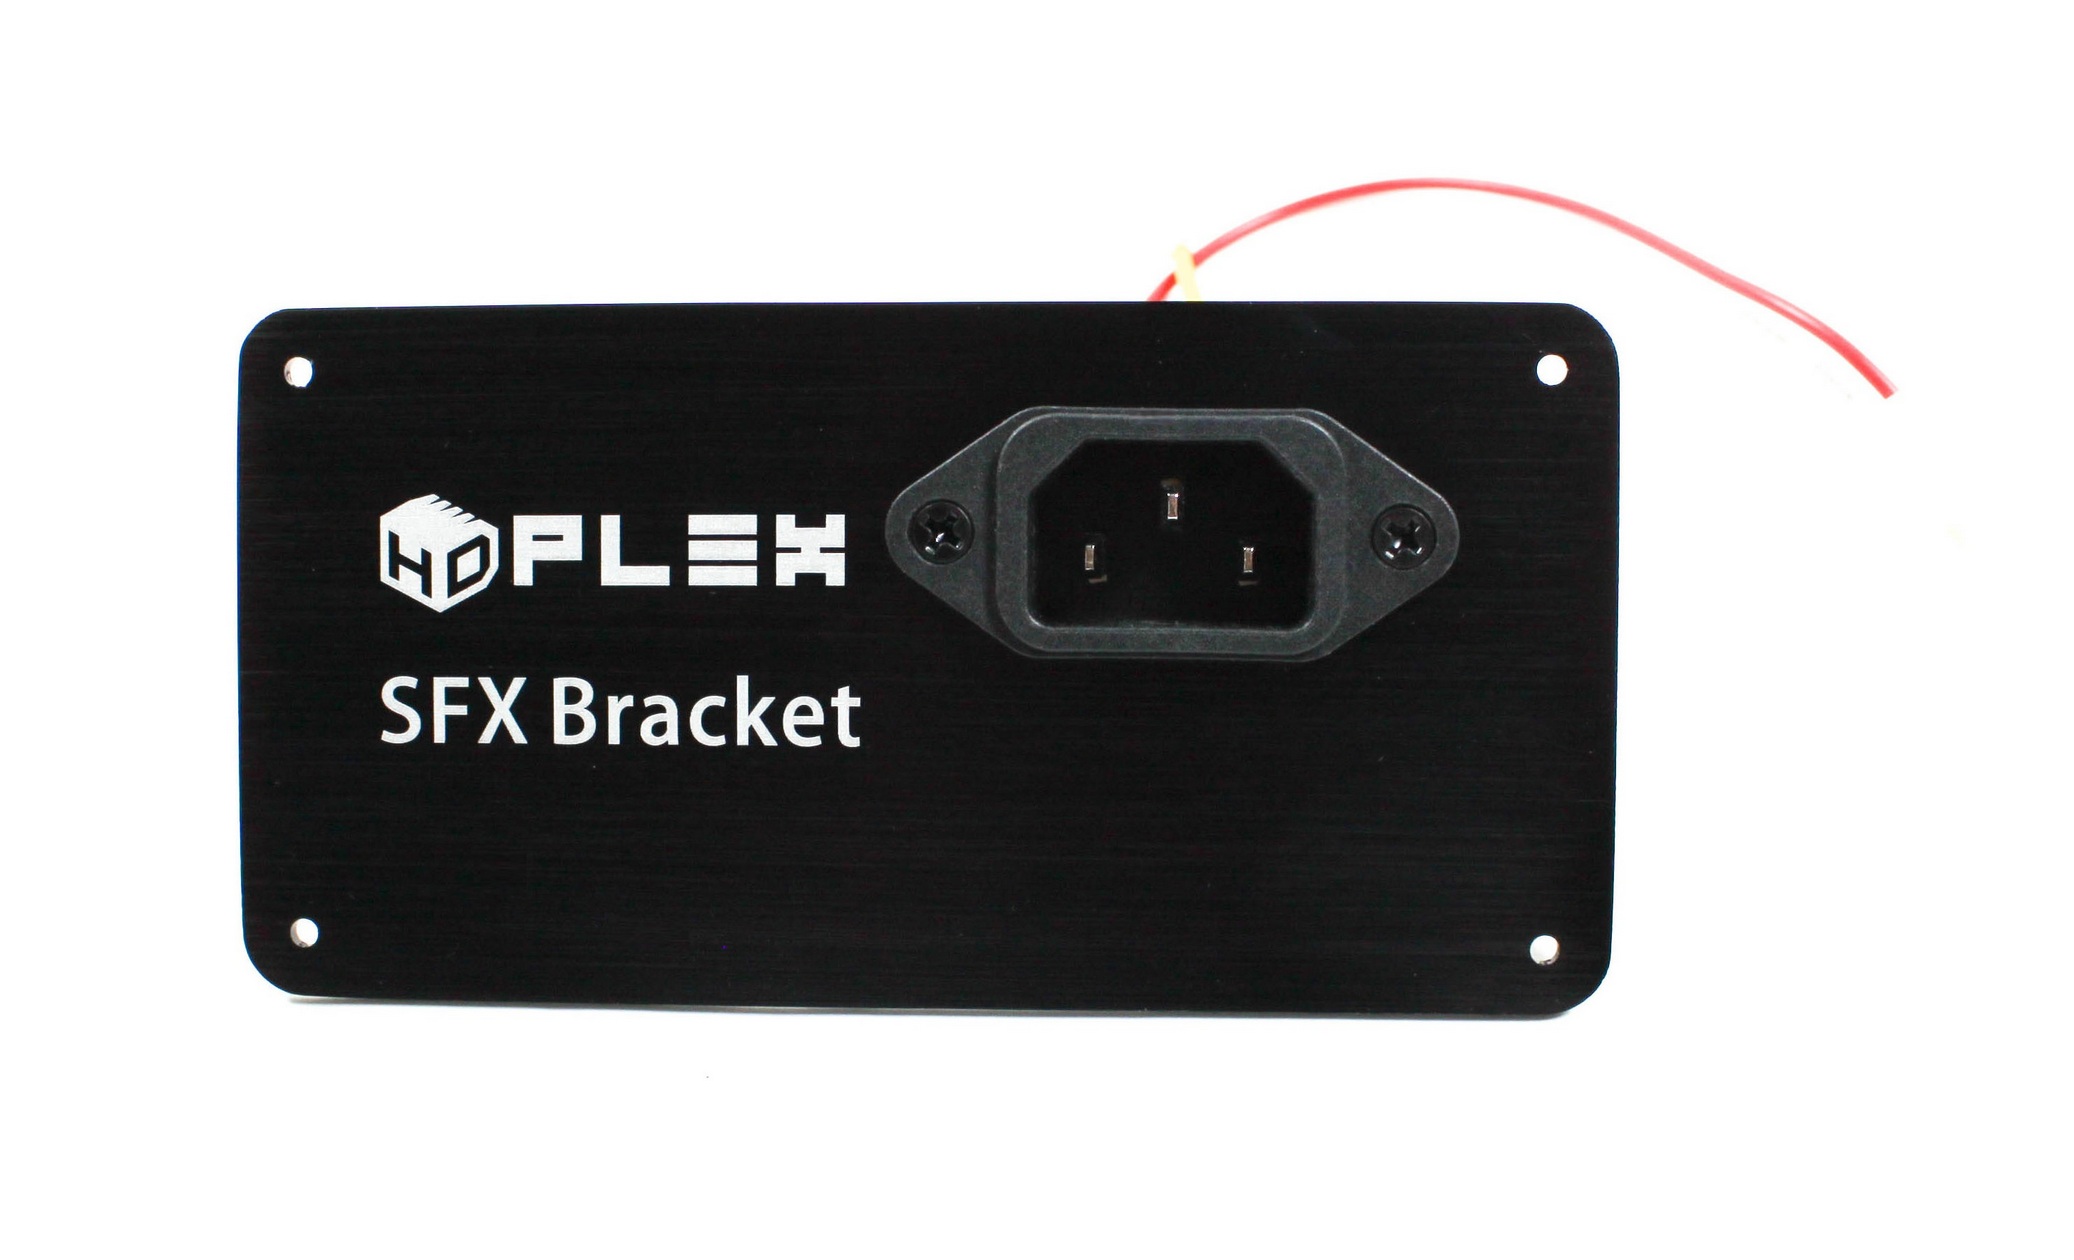 HDPLEX SFX Bracket